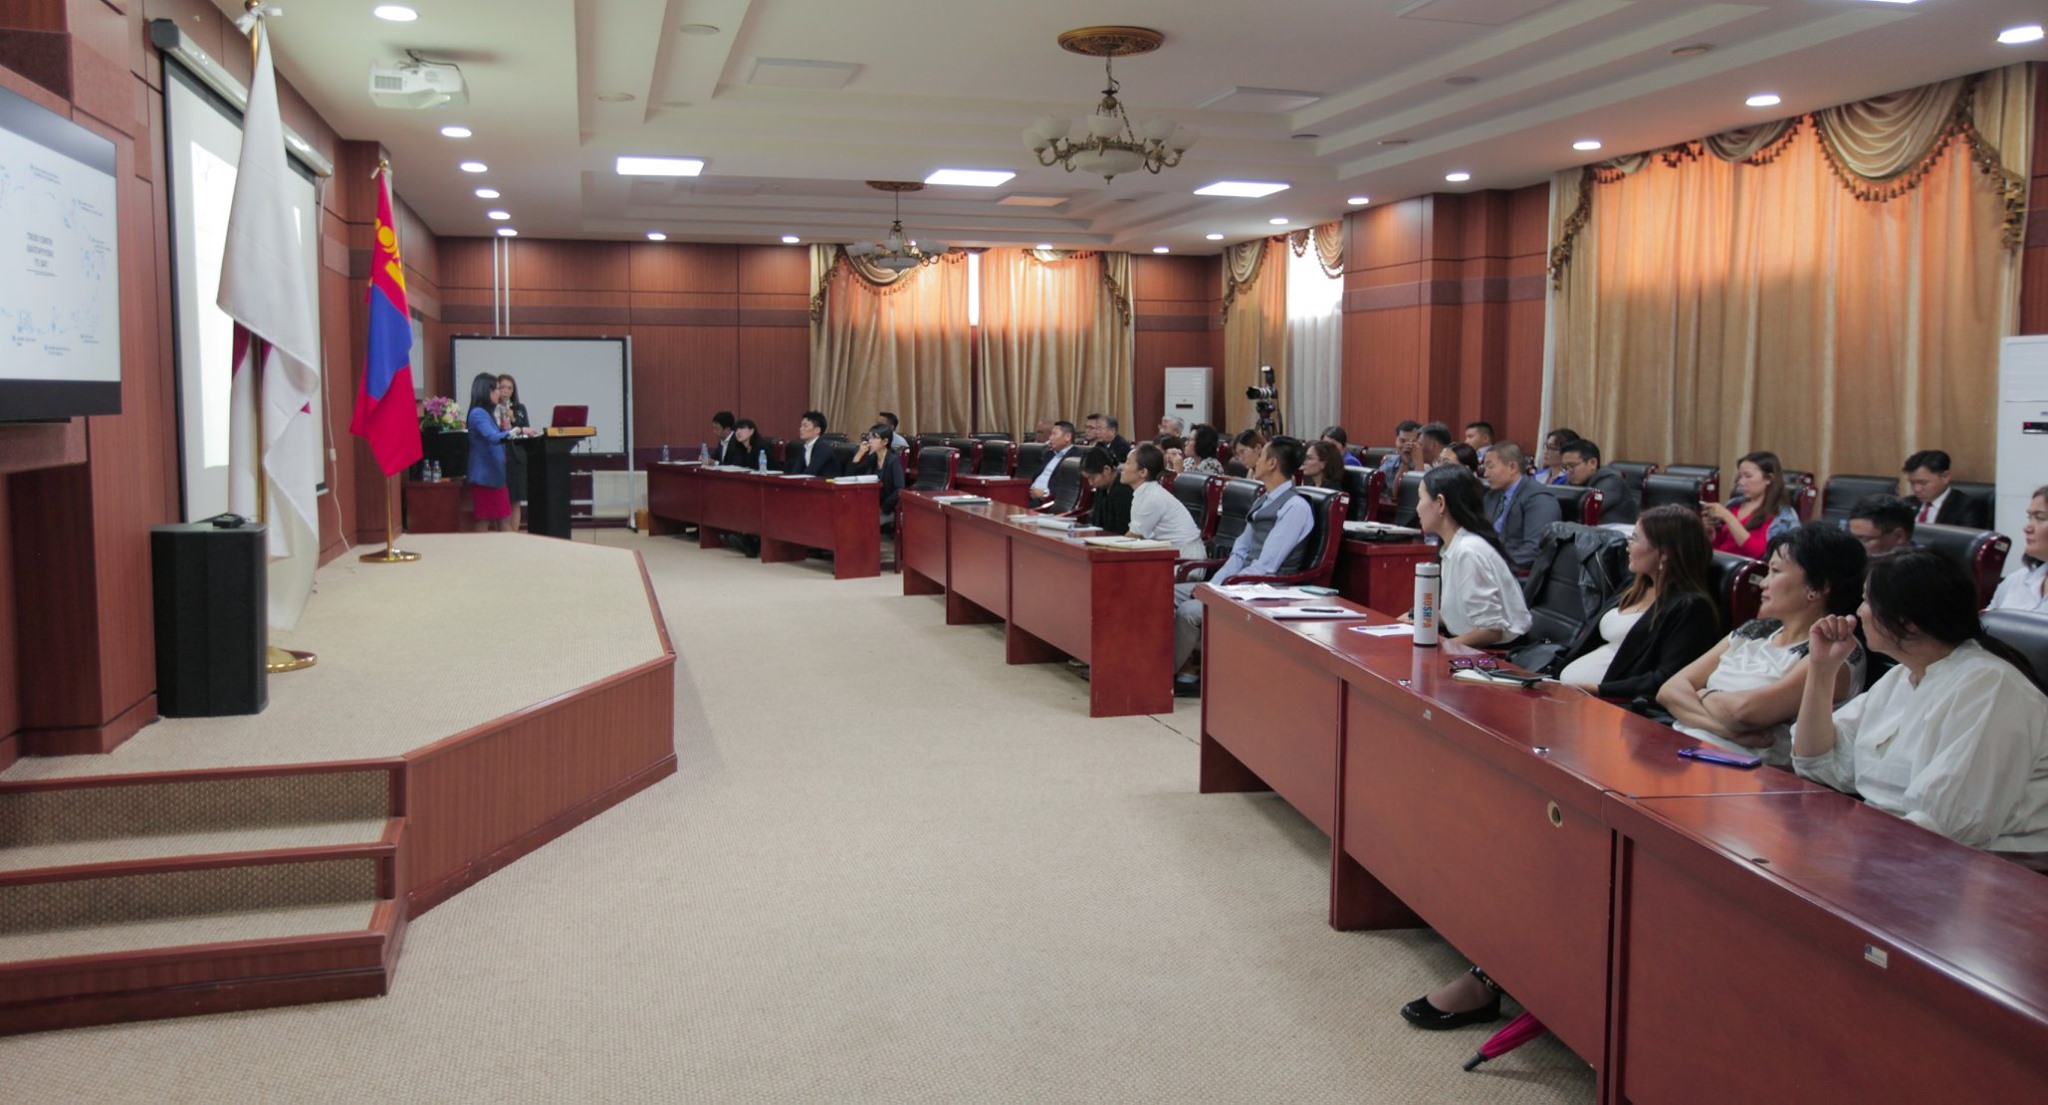 Японы Шизүока муж болон Монгол бизнес эрхлэгчдийн бизнесийн хамтын ажиллагааны боломж” нэртэй семинар боллоо